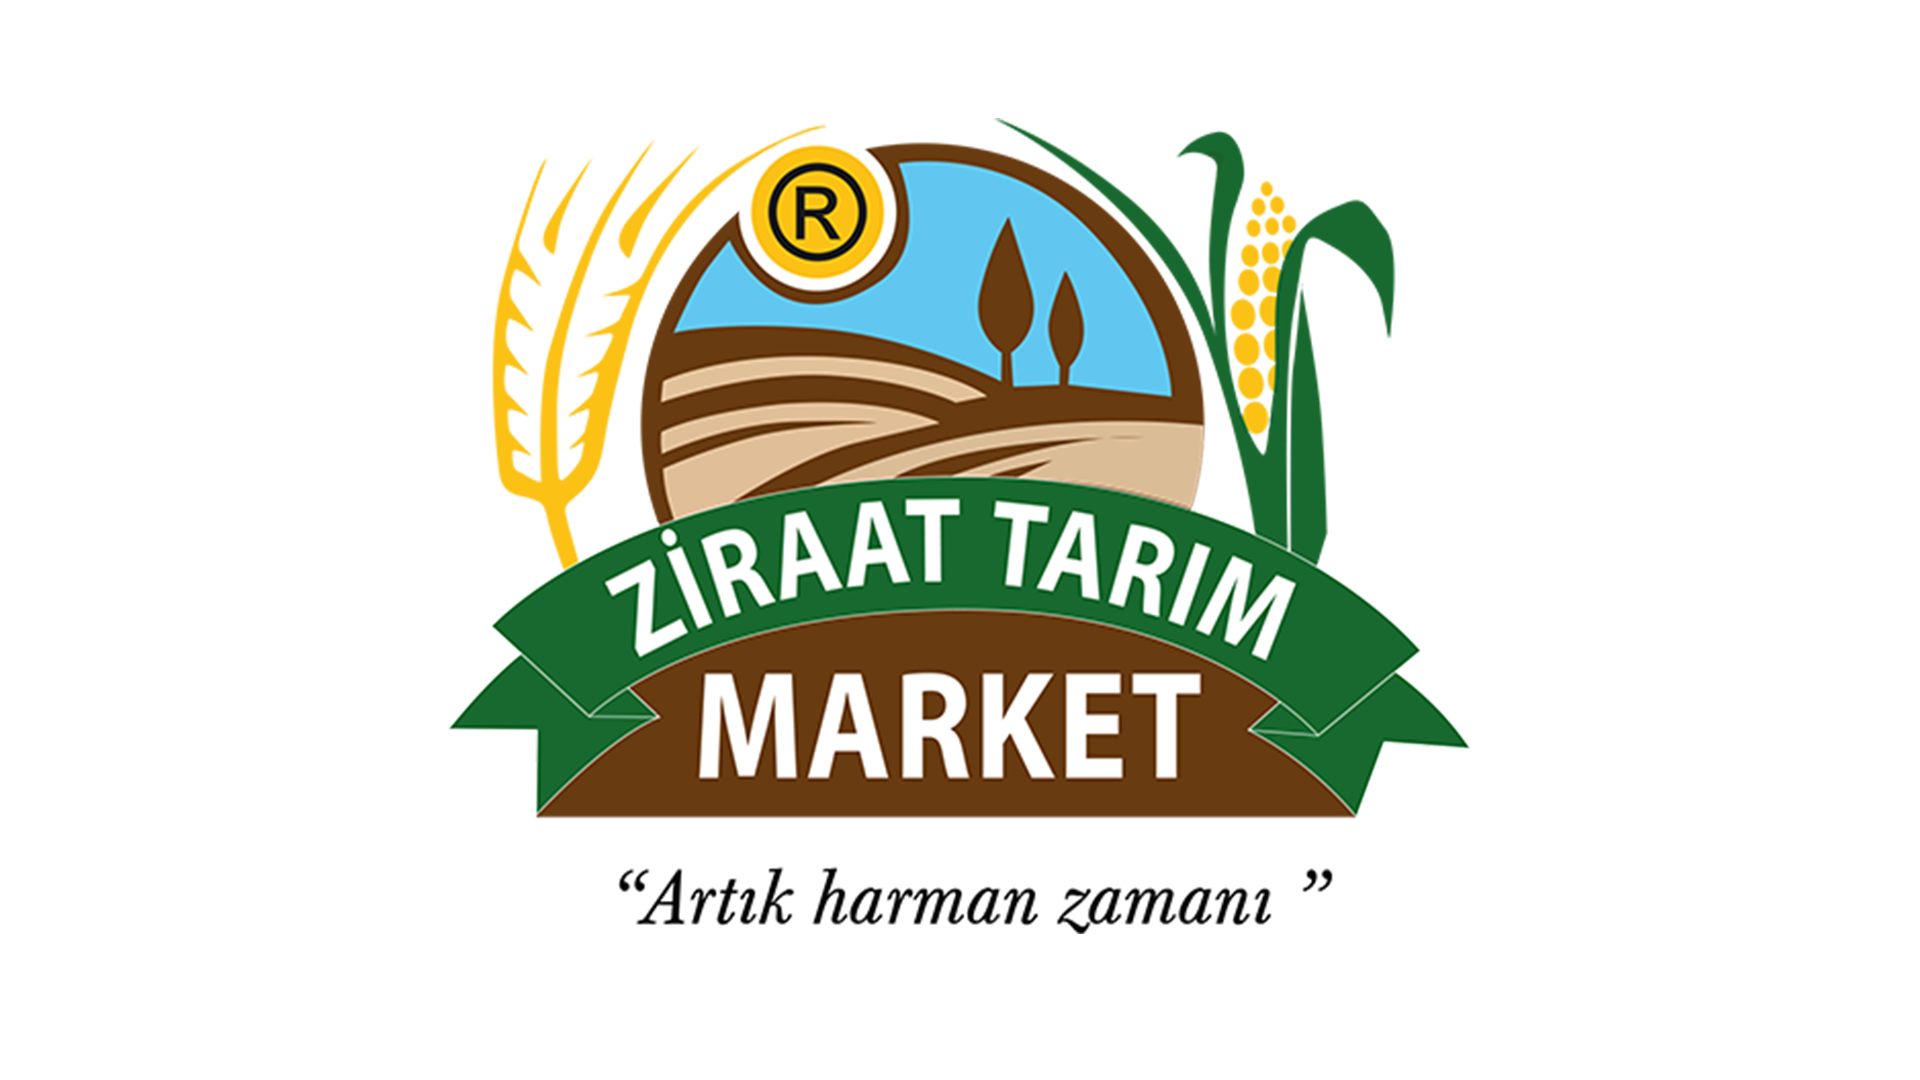 Ziraat Tarım Market 2018 Kataloğu